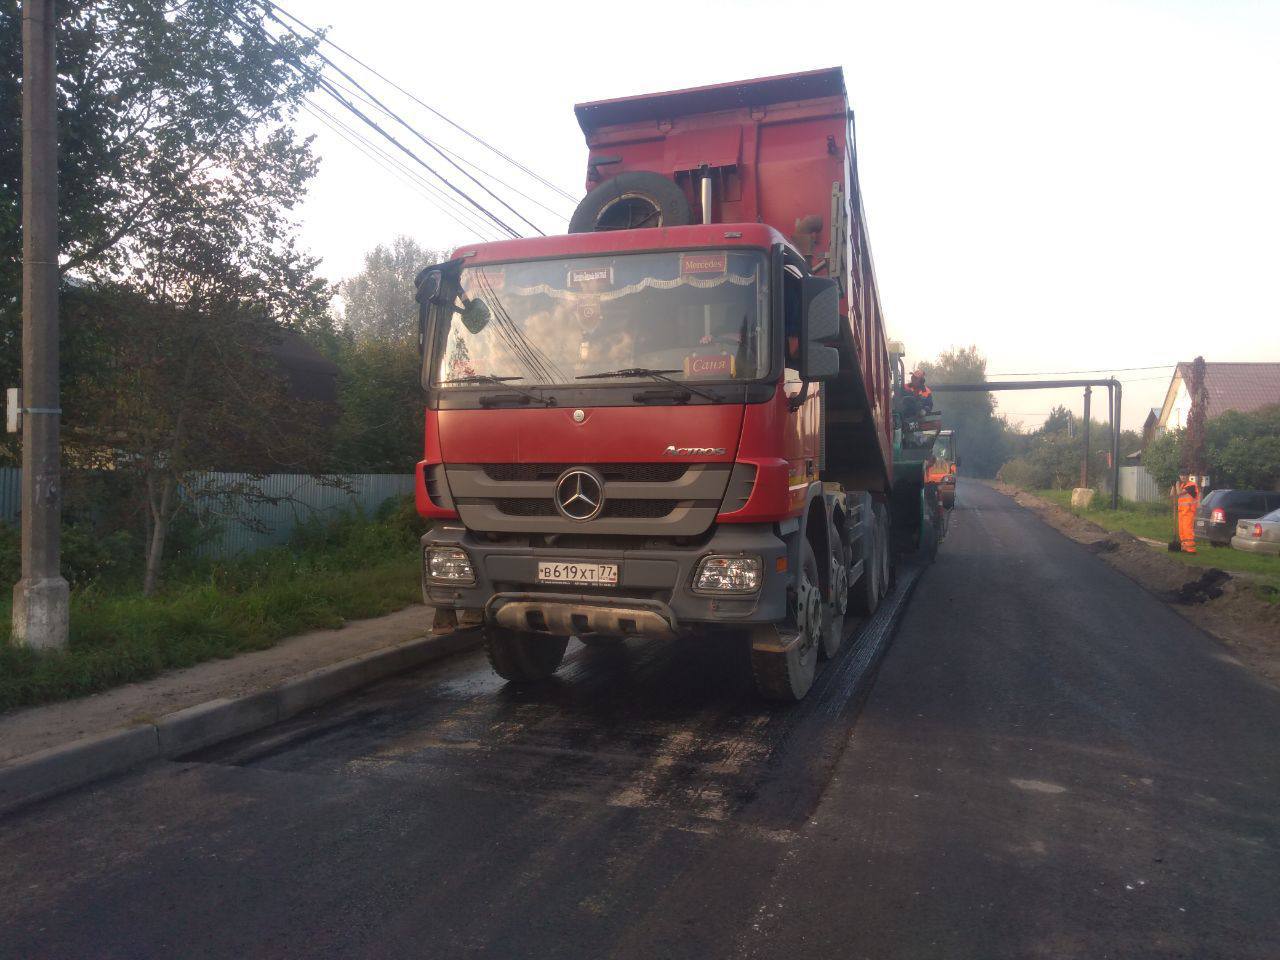  Завершился ремонт региональной дороги Щапово - Поливаново